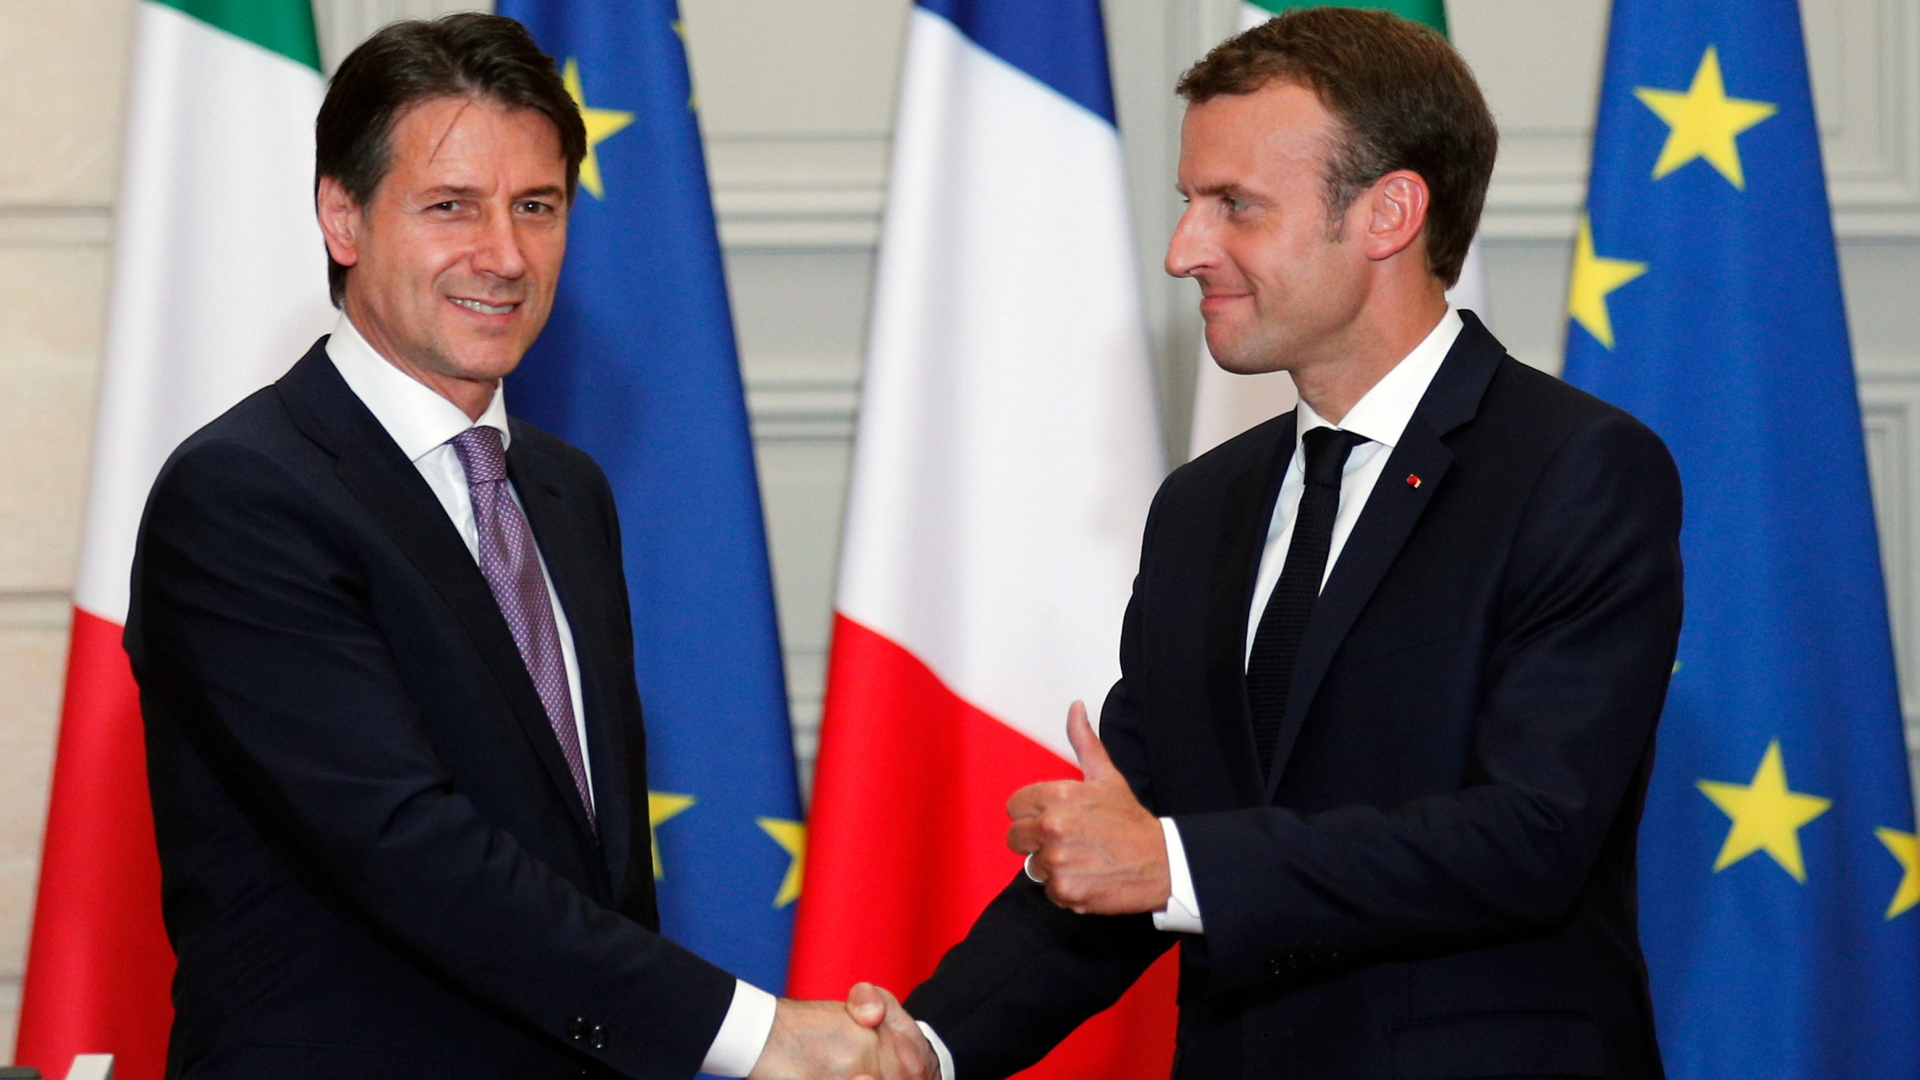 Frankreichs Präsident Emmanuel Macron und Italiens Ministerpräsident Giuseppe Conte schütteln die Hände.  | Bildquelle: AFP